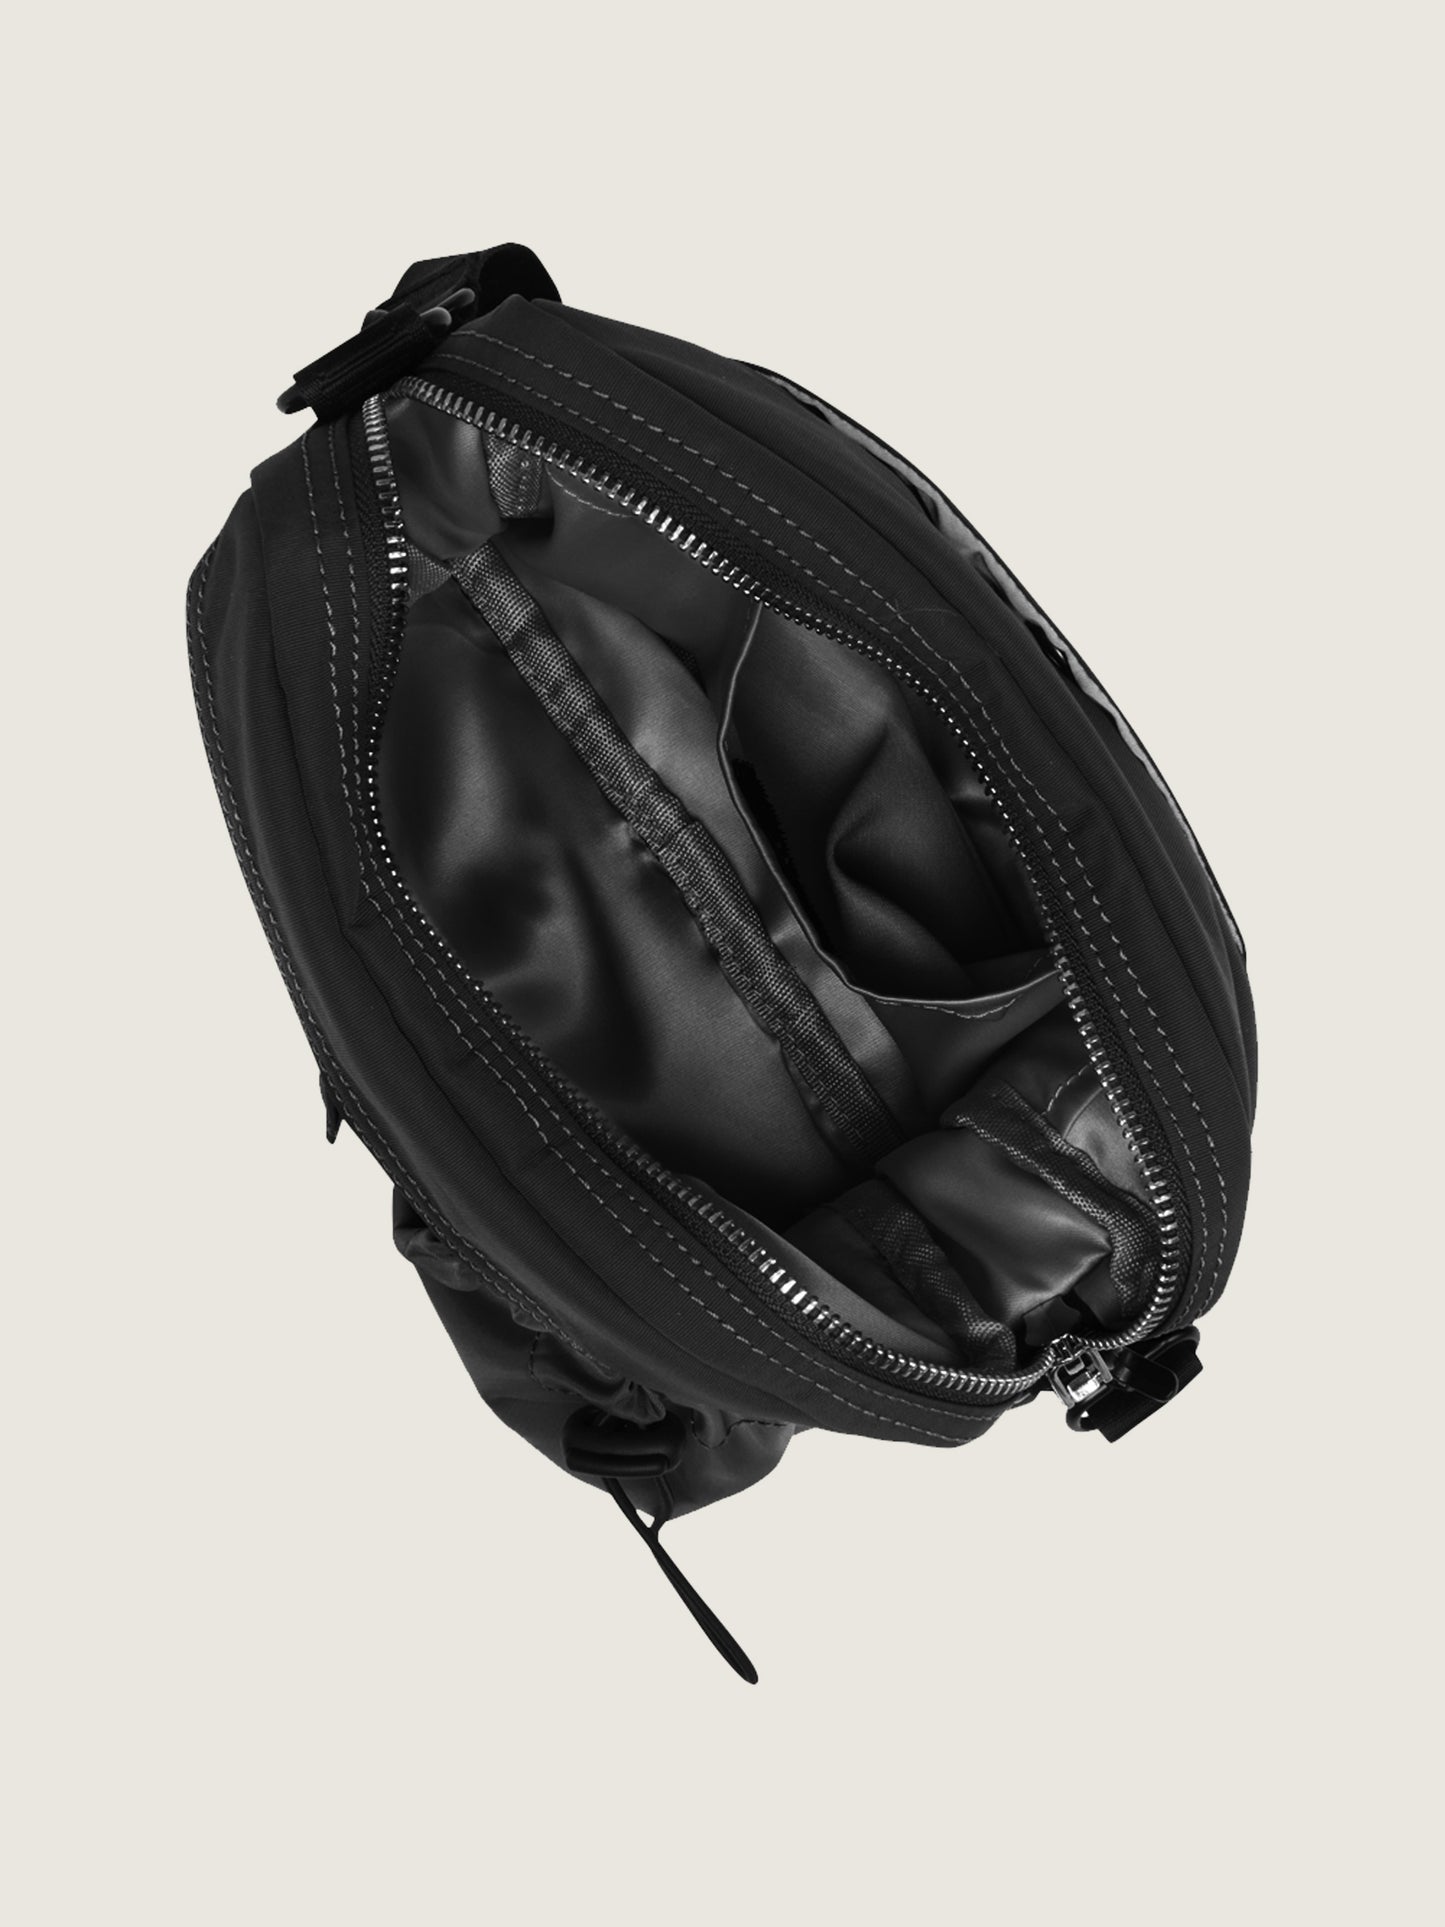 Woodbird Top cross bag Accessories Black